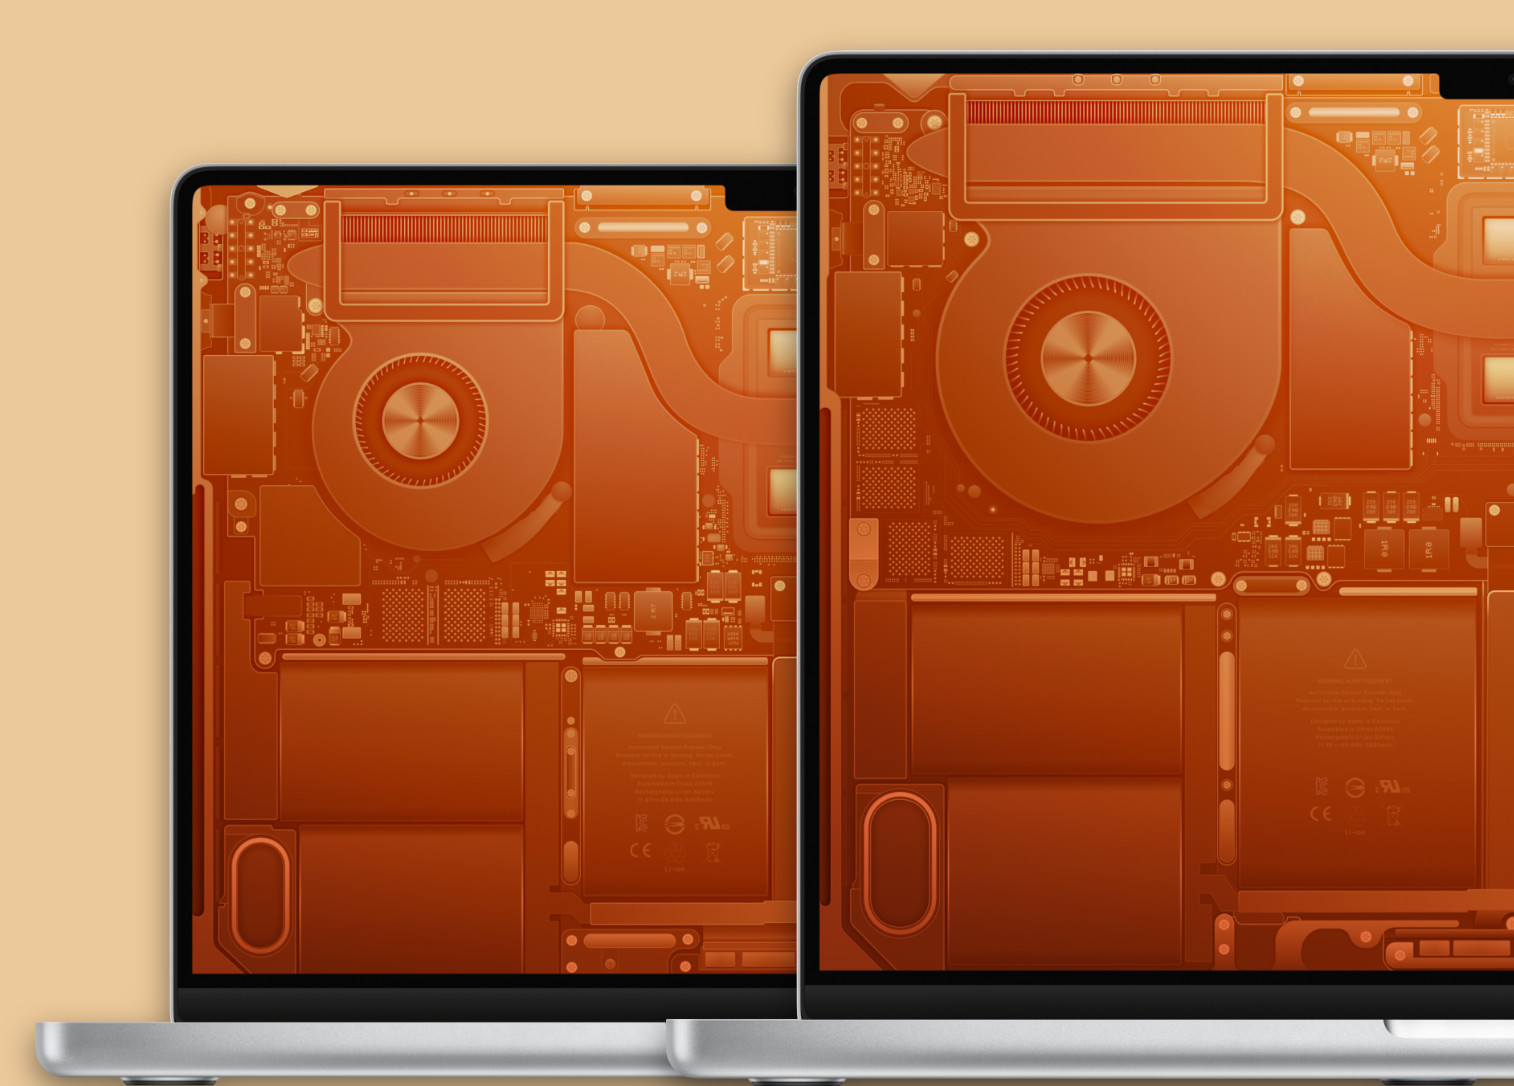 Hình nền cho Mac đẹp và chất lượng cao, chủ đề sơ đồ nội thất của MacBook Pro M2